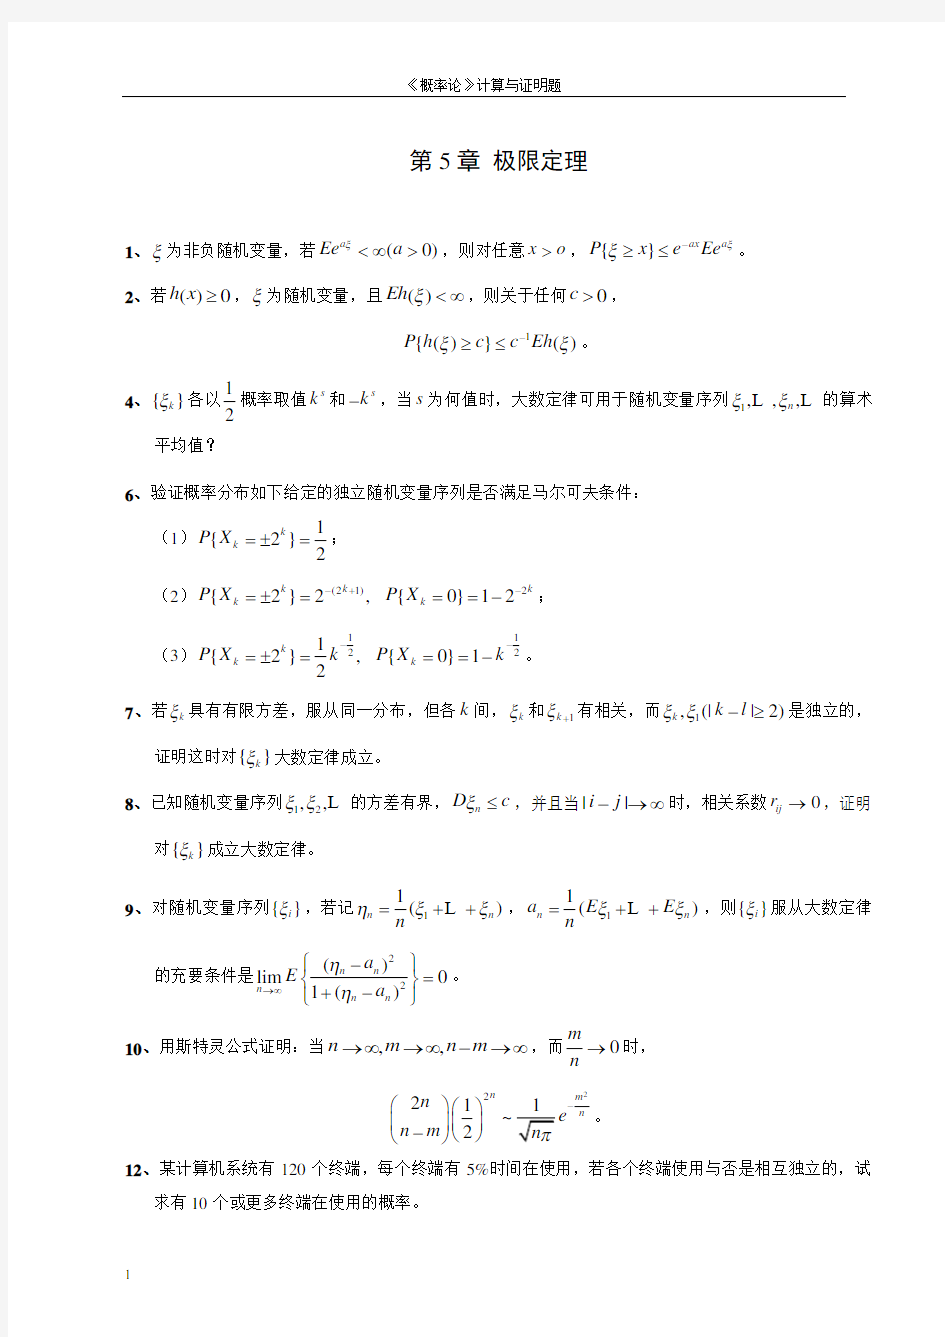 李贤平 第2版《概率论基础》第五章答案